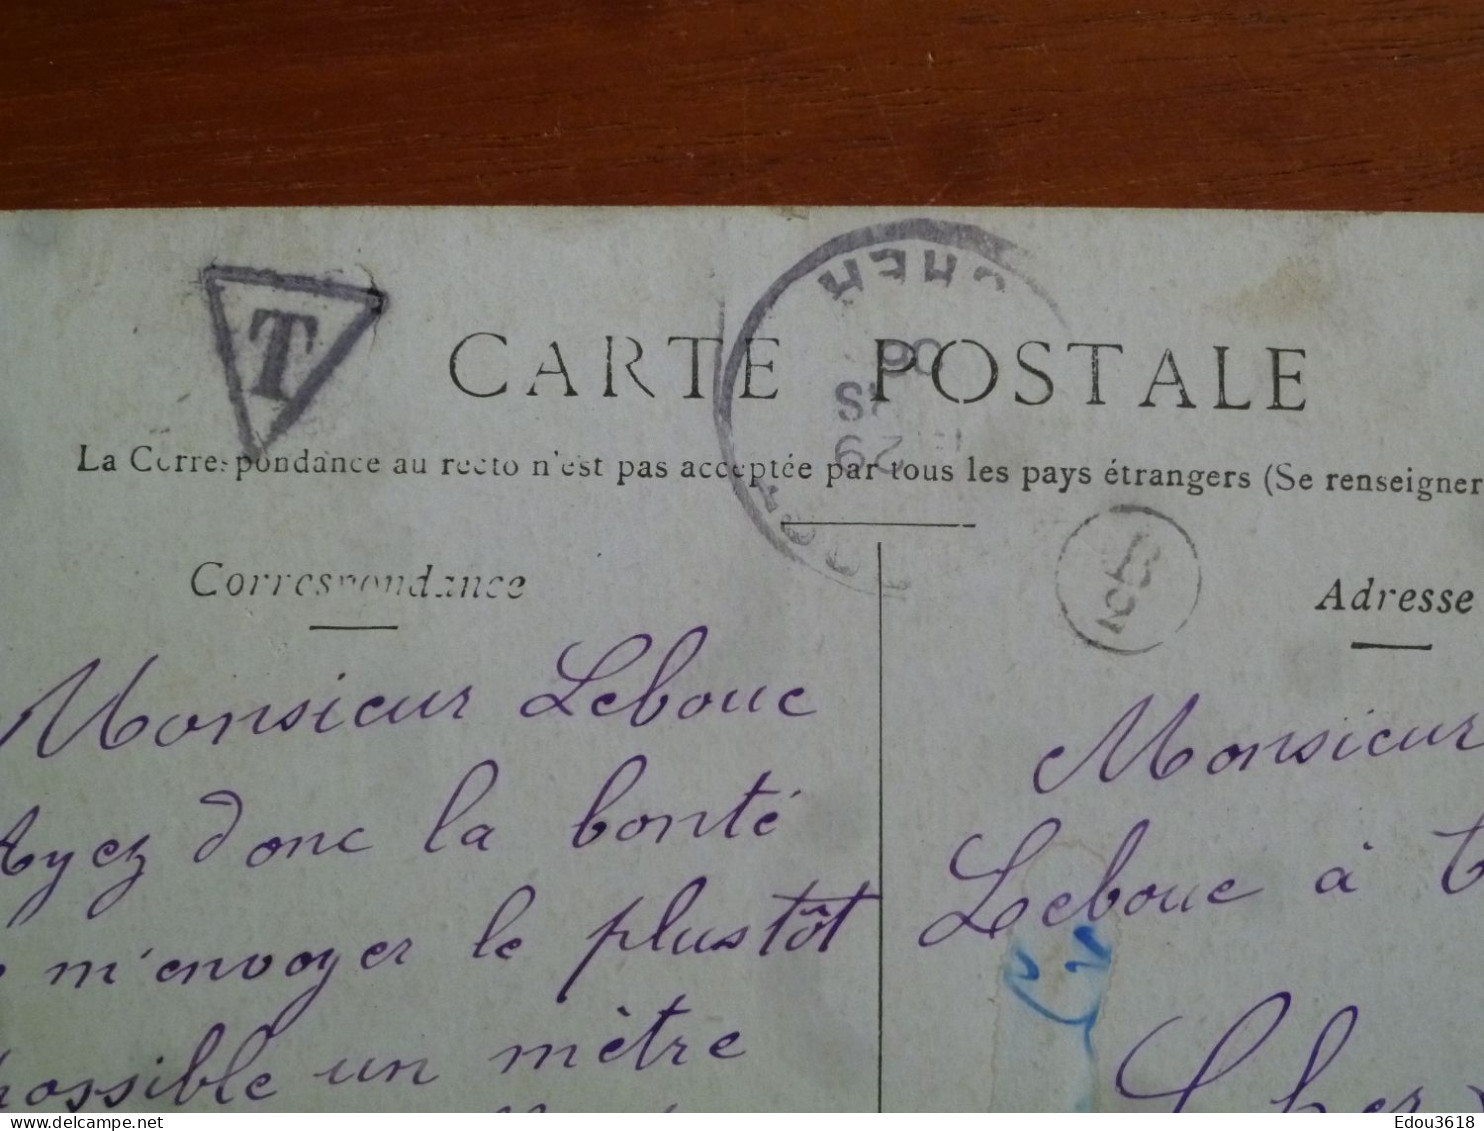 Carte Postale Rome Le Forum Staerck - Timbre Taxe - Lettre T Dans Triangle 1910 - Indicatif Circulaire Facteur 758 - Handstempel